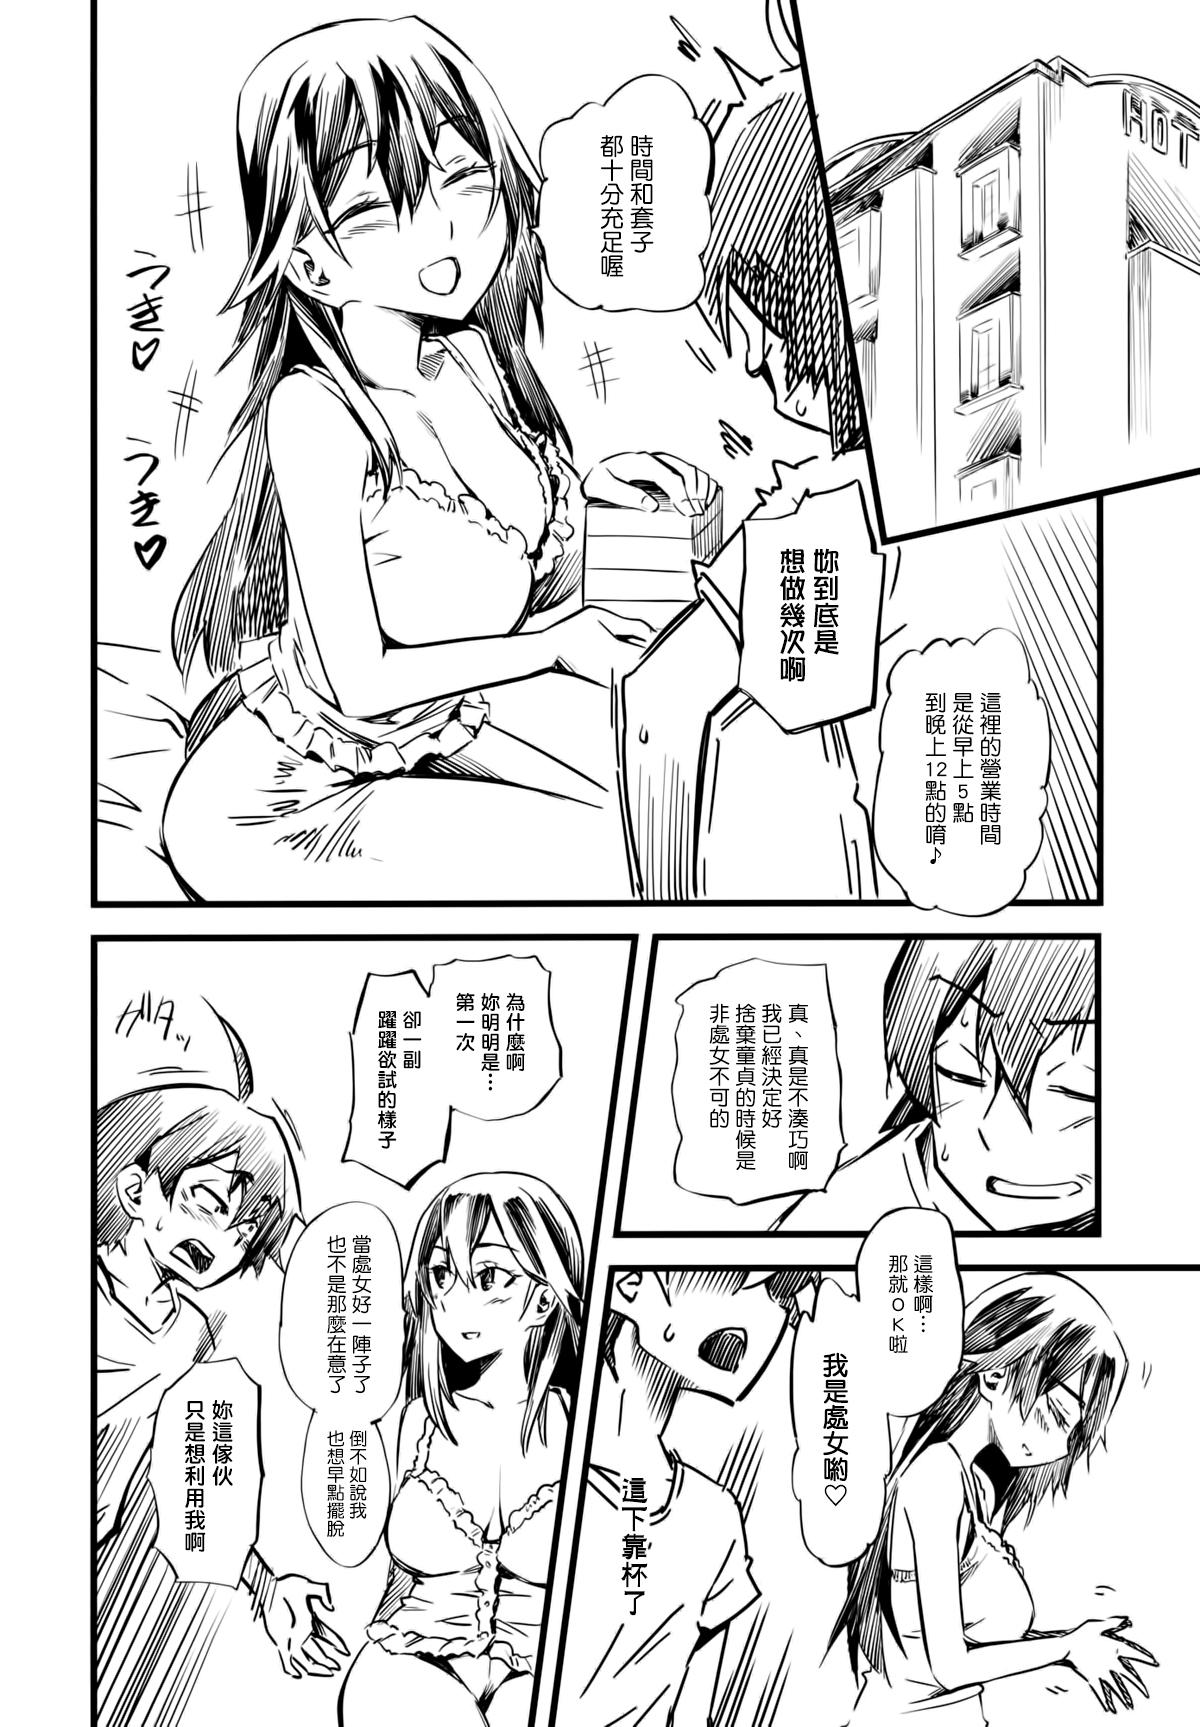 Flash Service Time - Yahari ore no seishun love come wa machigatteiru Pussy Licking - Page 5